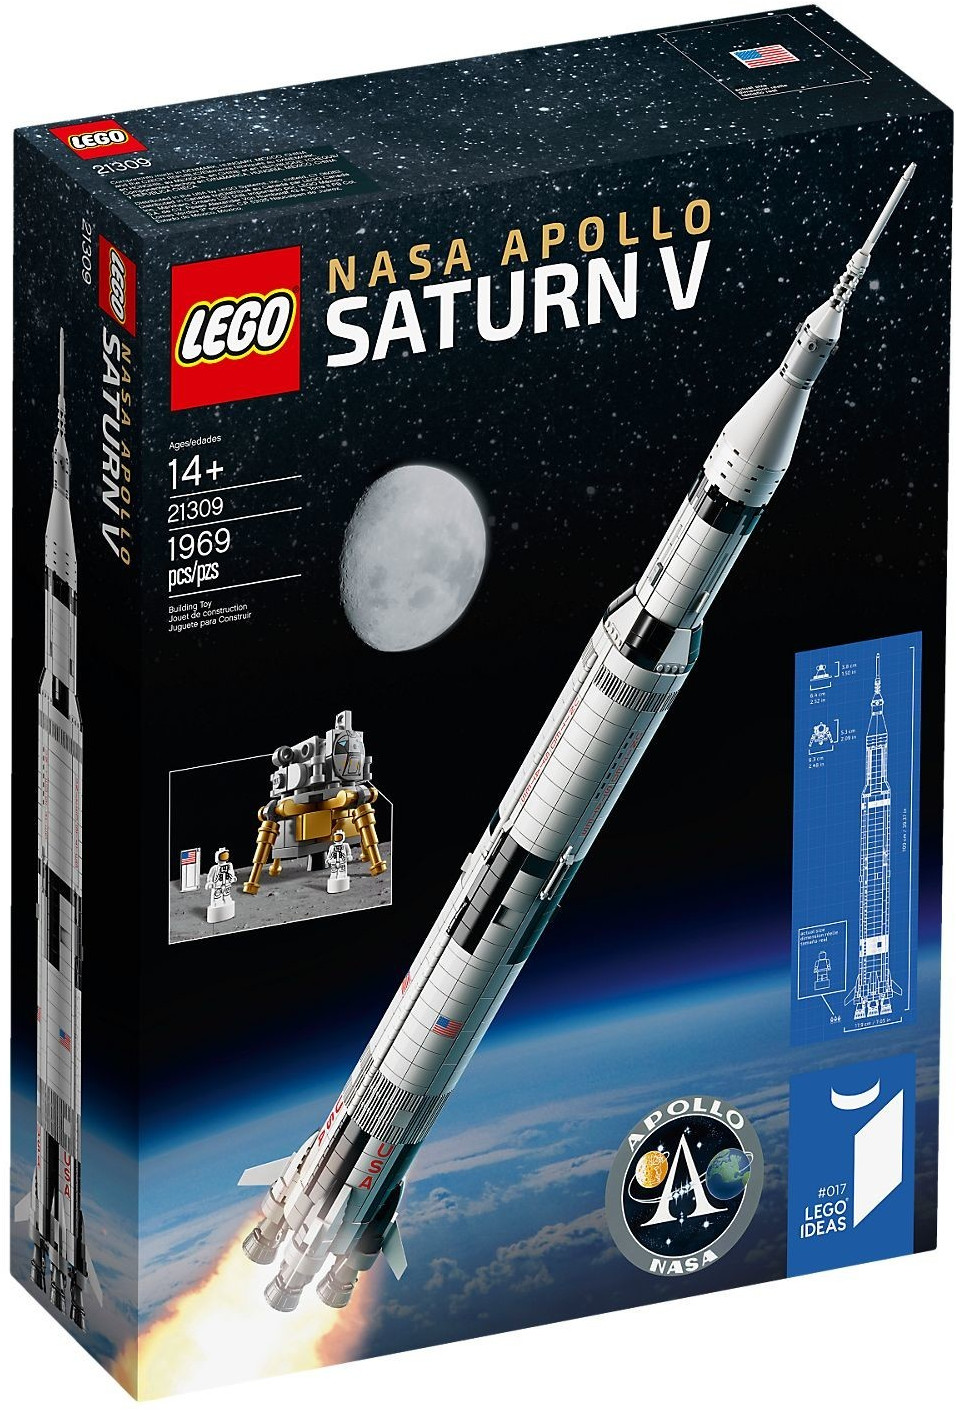 Immagine relativa a LEGO 21309 Nasa Apollo Saturn V